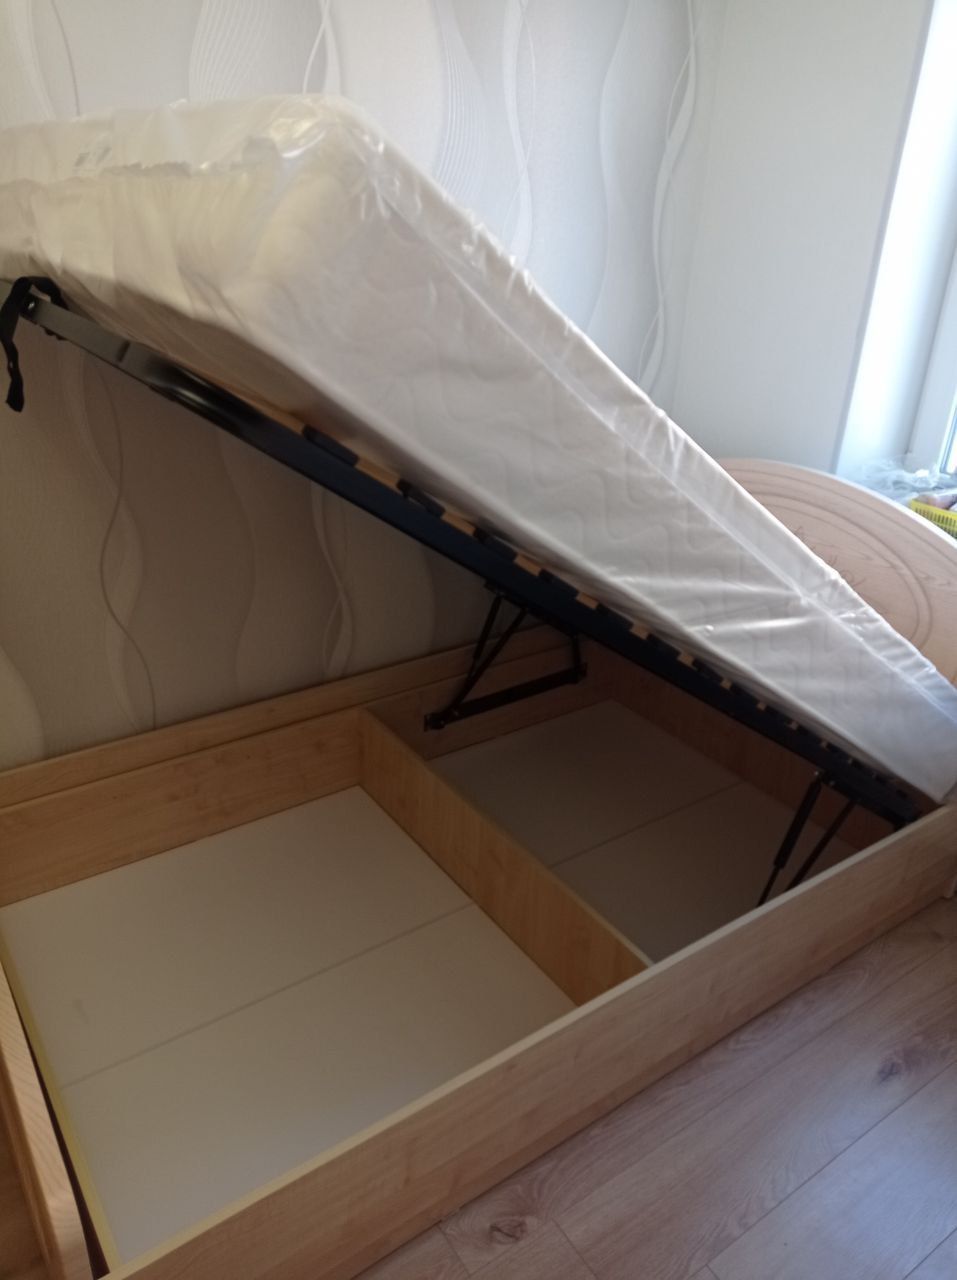 Двуспальная кровать "Натали" 140х200 с подъемным механизмом цвет орех изножье высокое